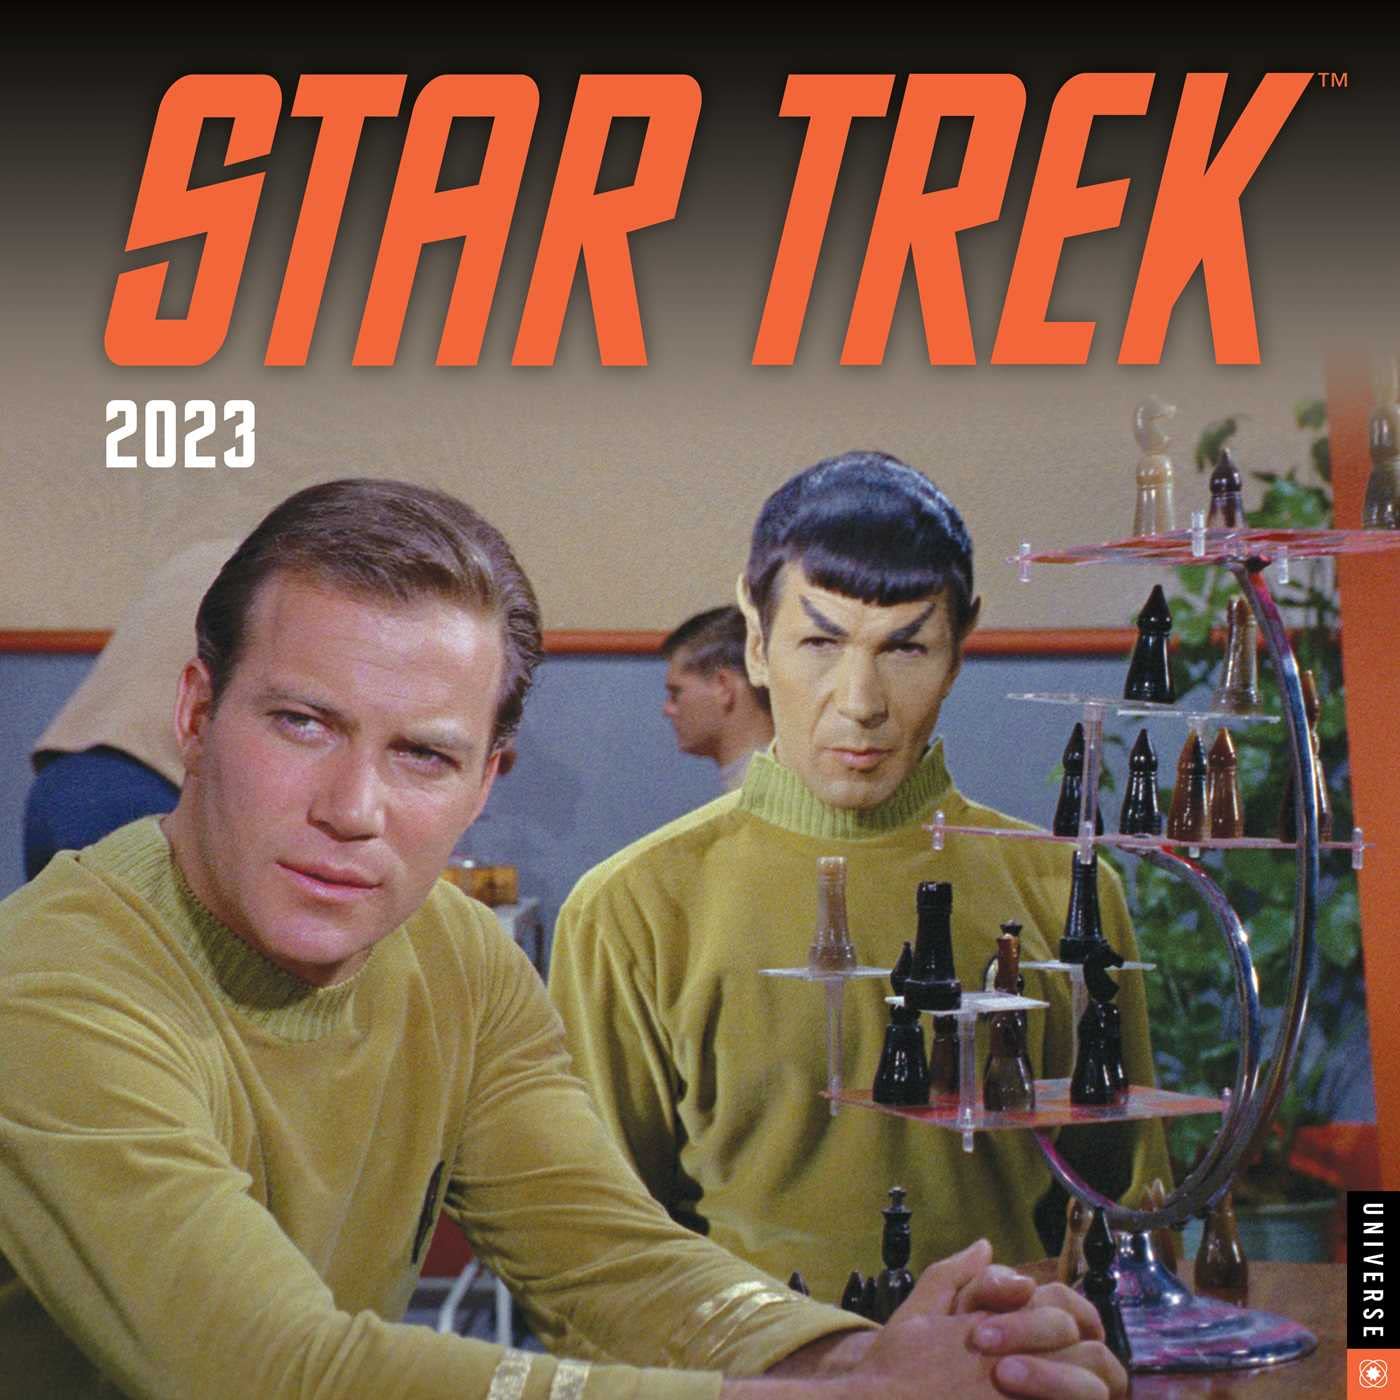 Star Trek 2023 Wall Calendar